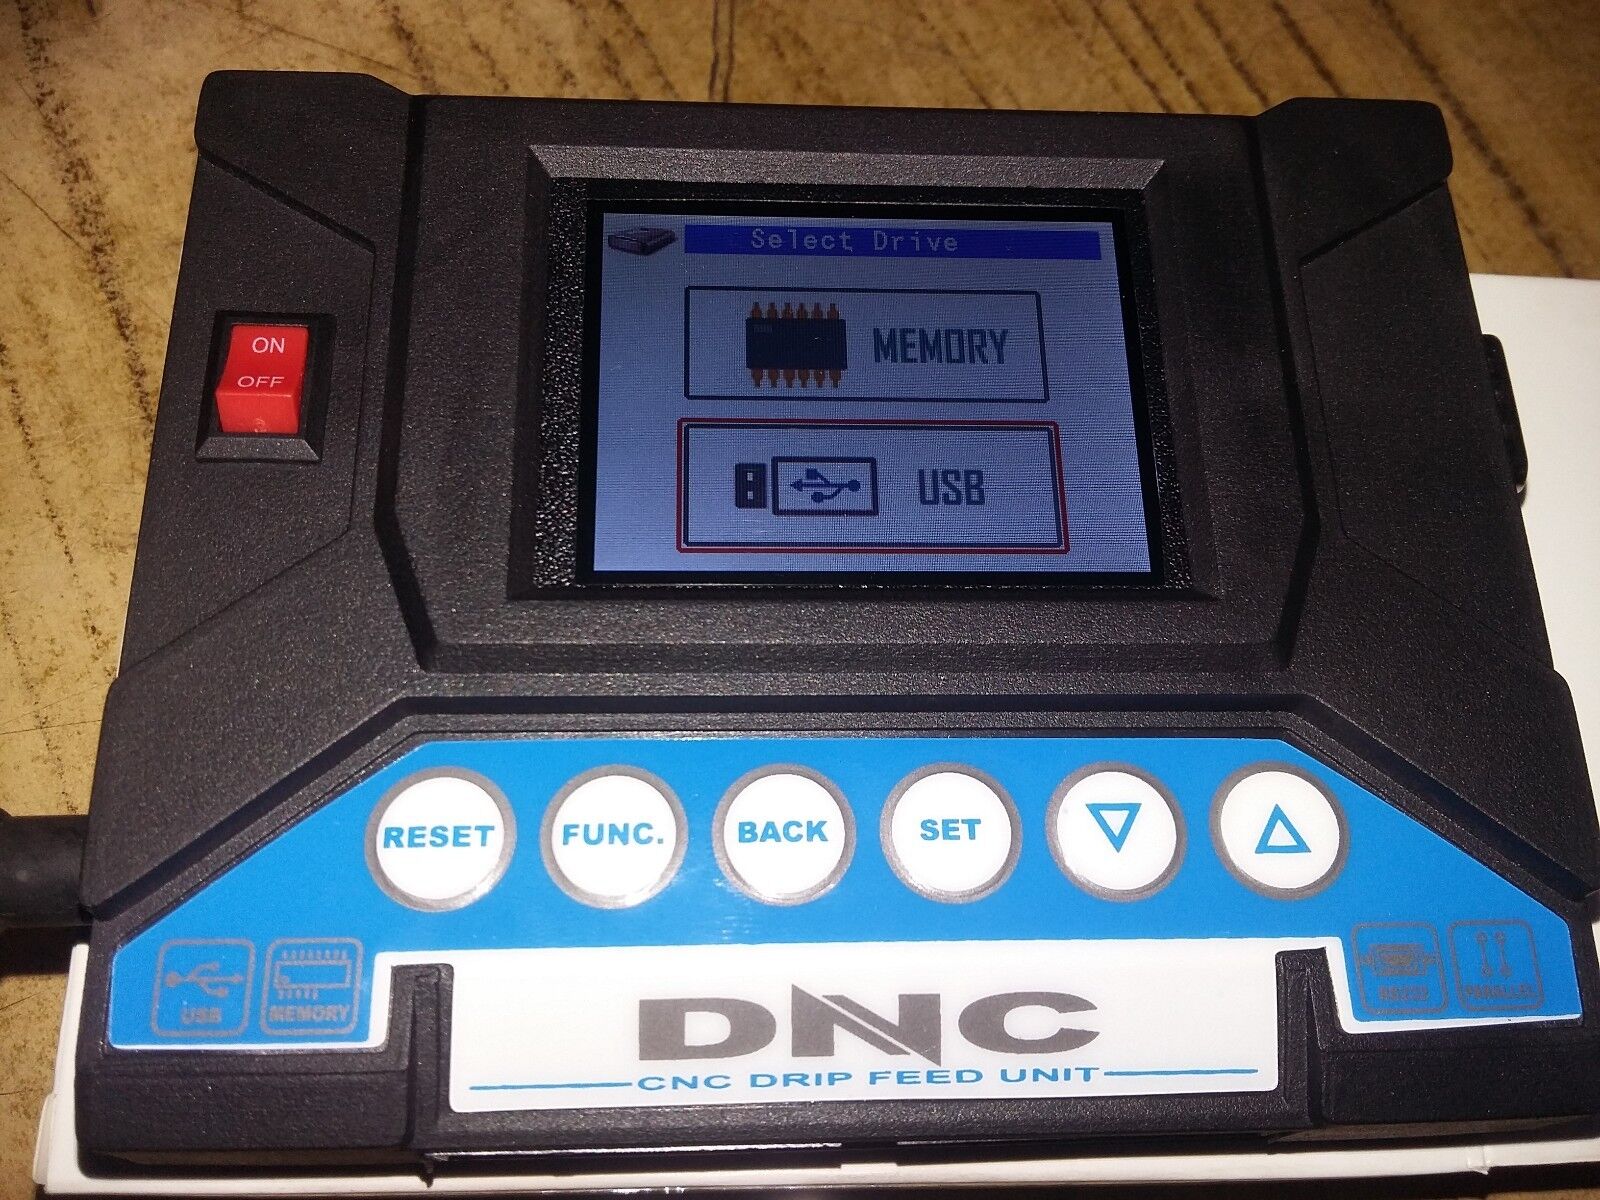  DNC-TITAN. RS 232 To USB Reader Drip Feeder.